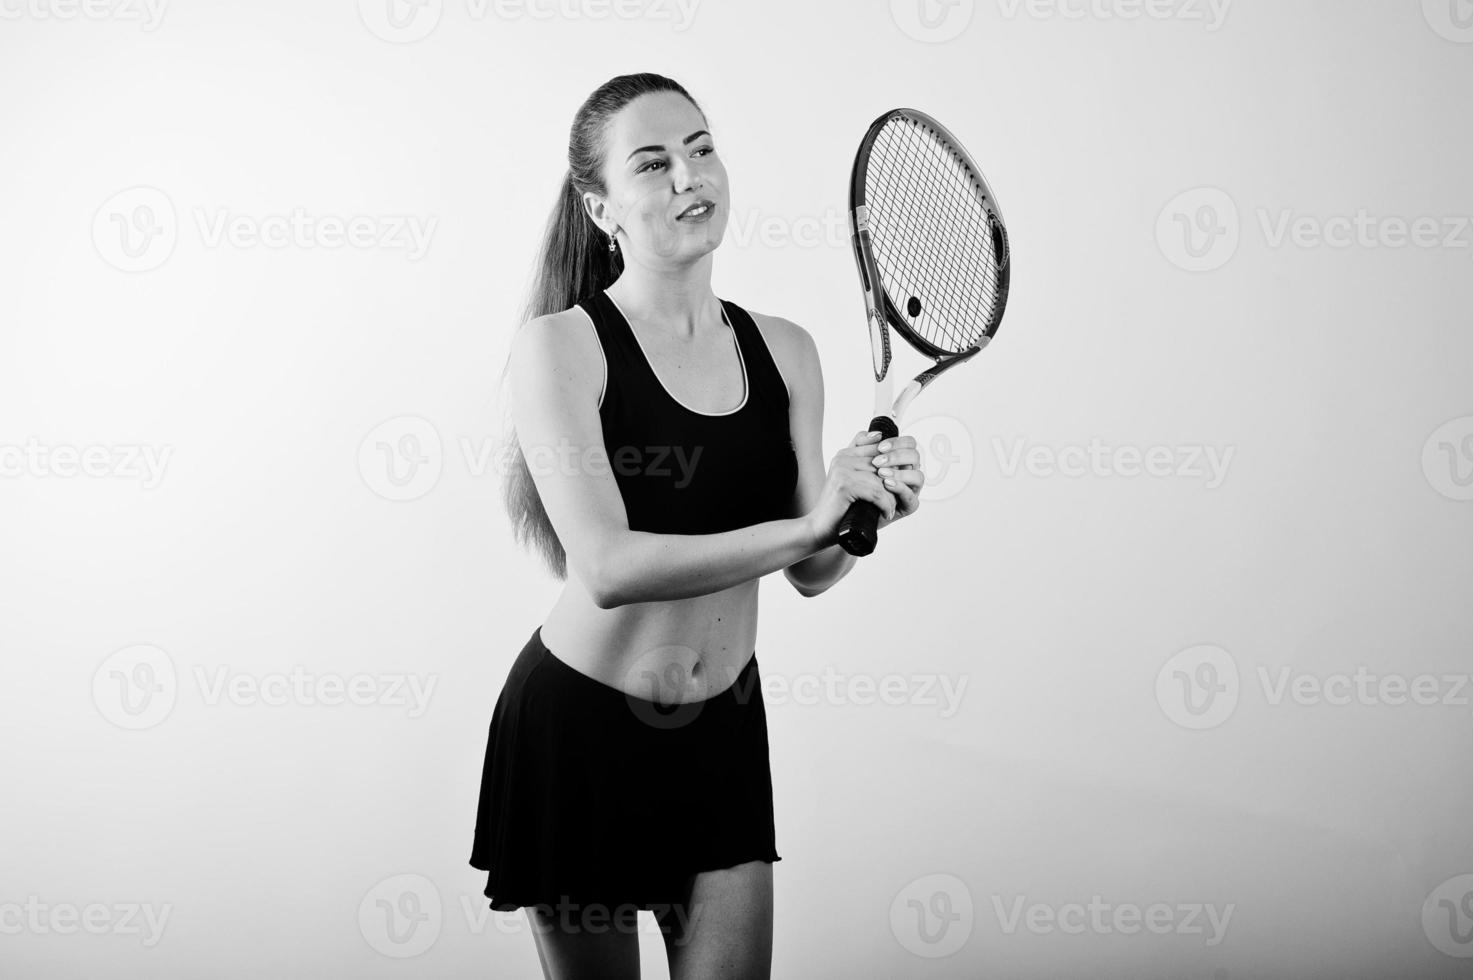 svart och vitt porträtt av vacker ung kvinna spelare i sportkläder håller tennisracket medan stående mot vit bakgrund. foto